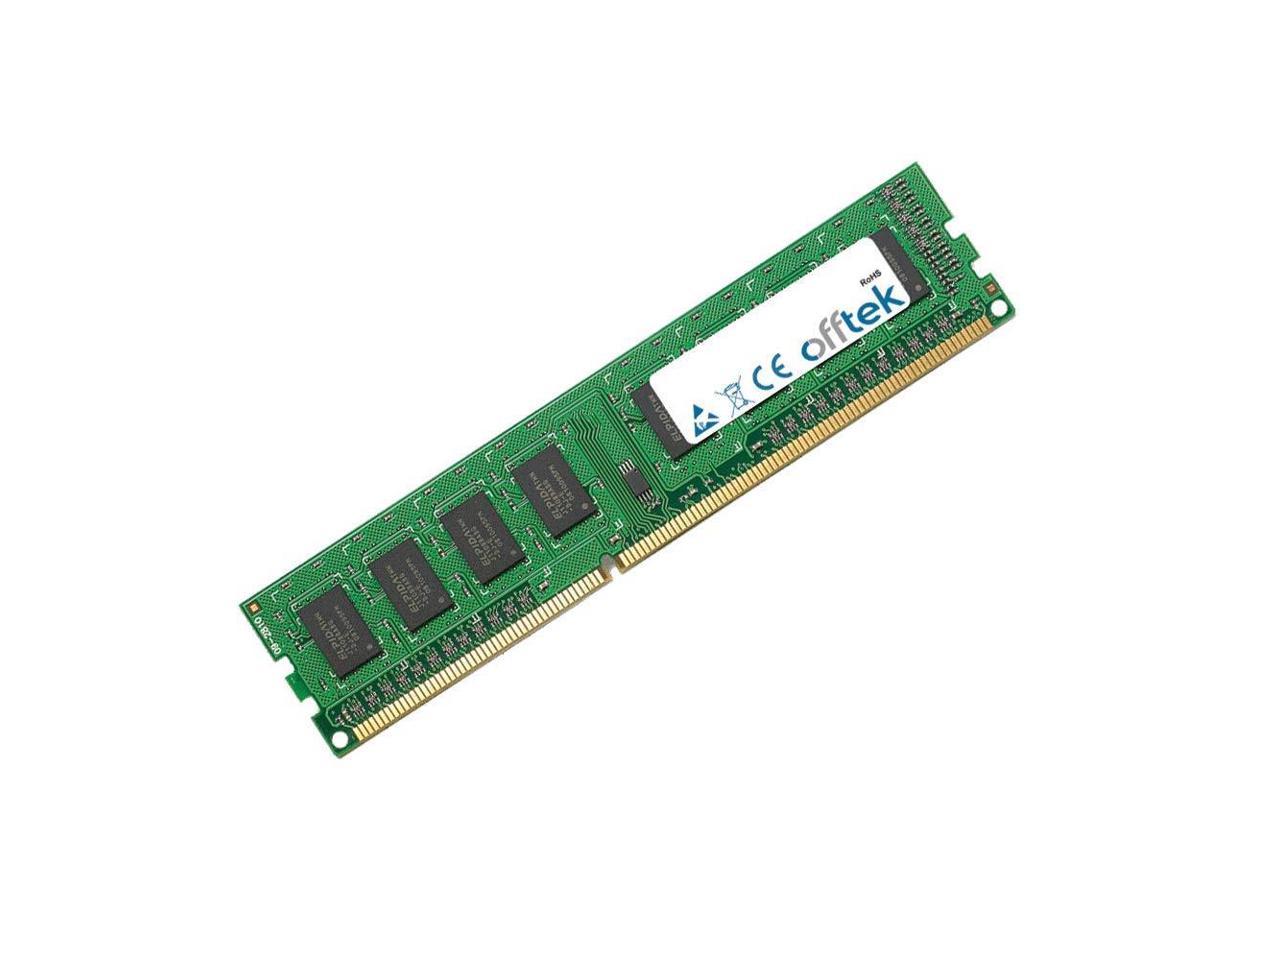 DDR3-8500 - Non-ECC Desktop Memory OFFTEK 2GB Replacement RAM Memory for HP-Compaq Presario CQ5802 